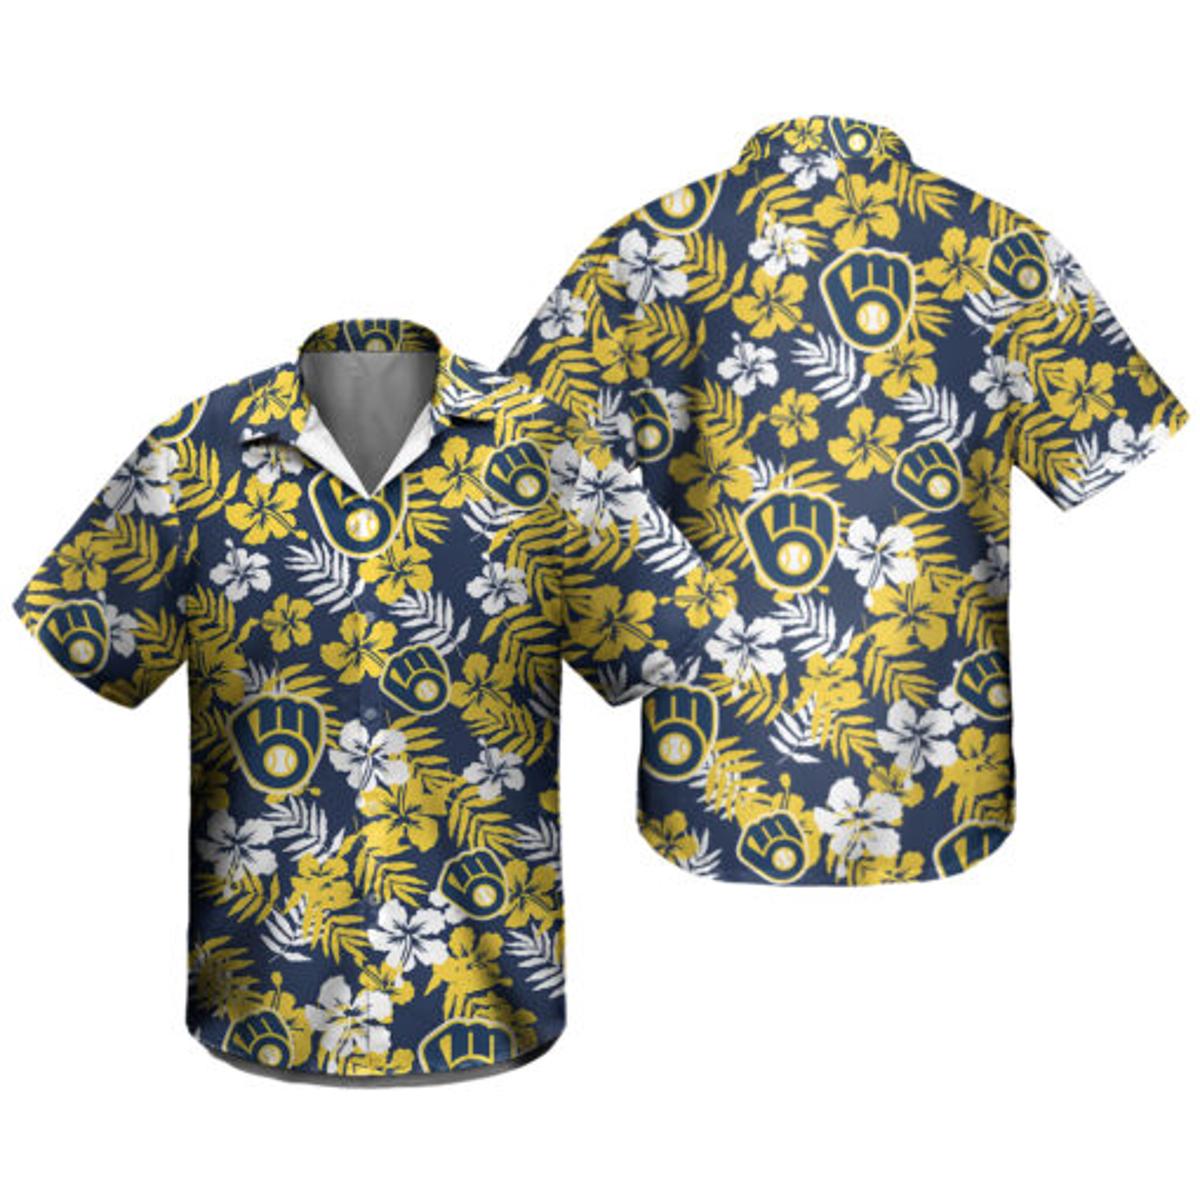 Tommy Bahama Milwaukee Brewers Hawaiian Shirt Gifts Idea